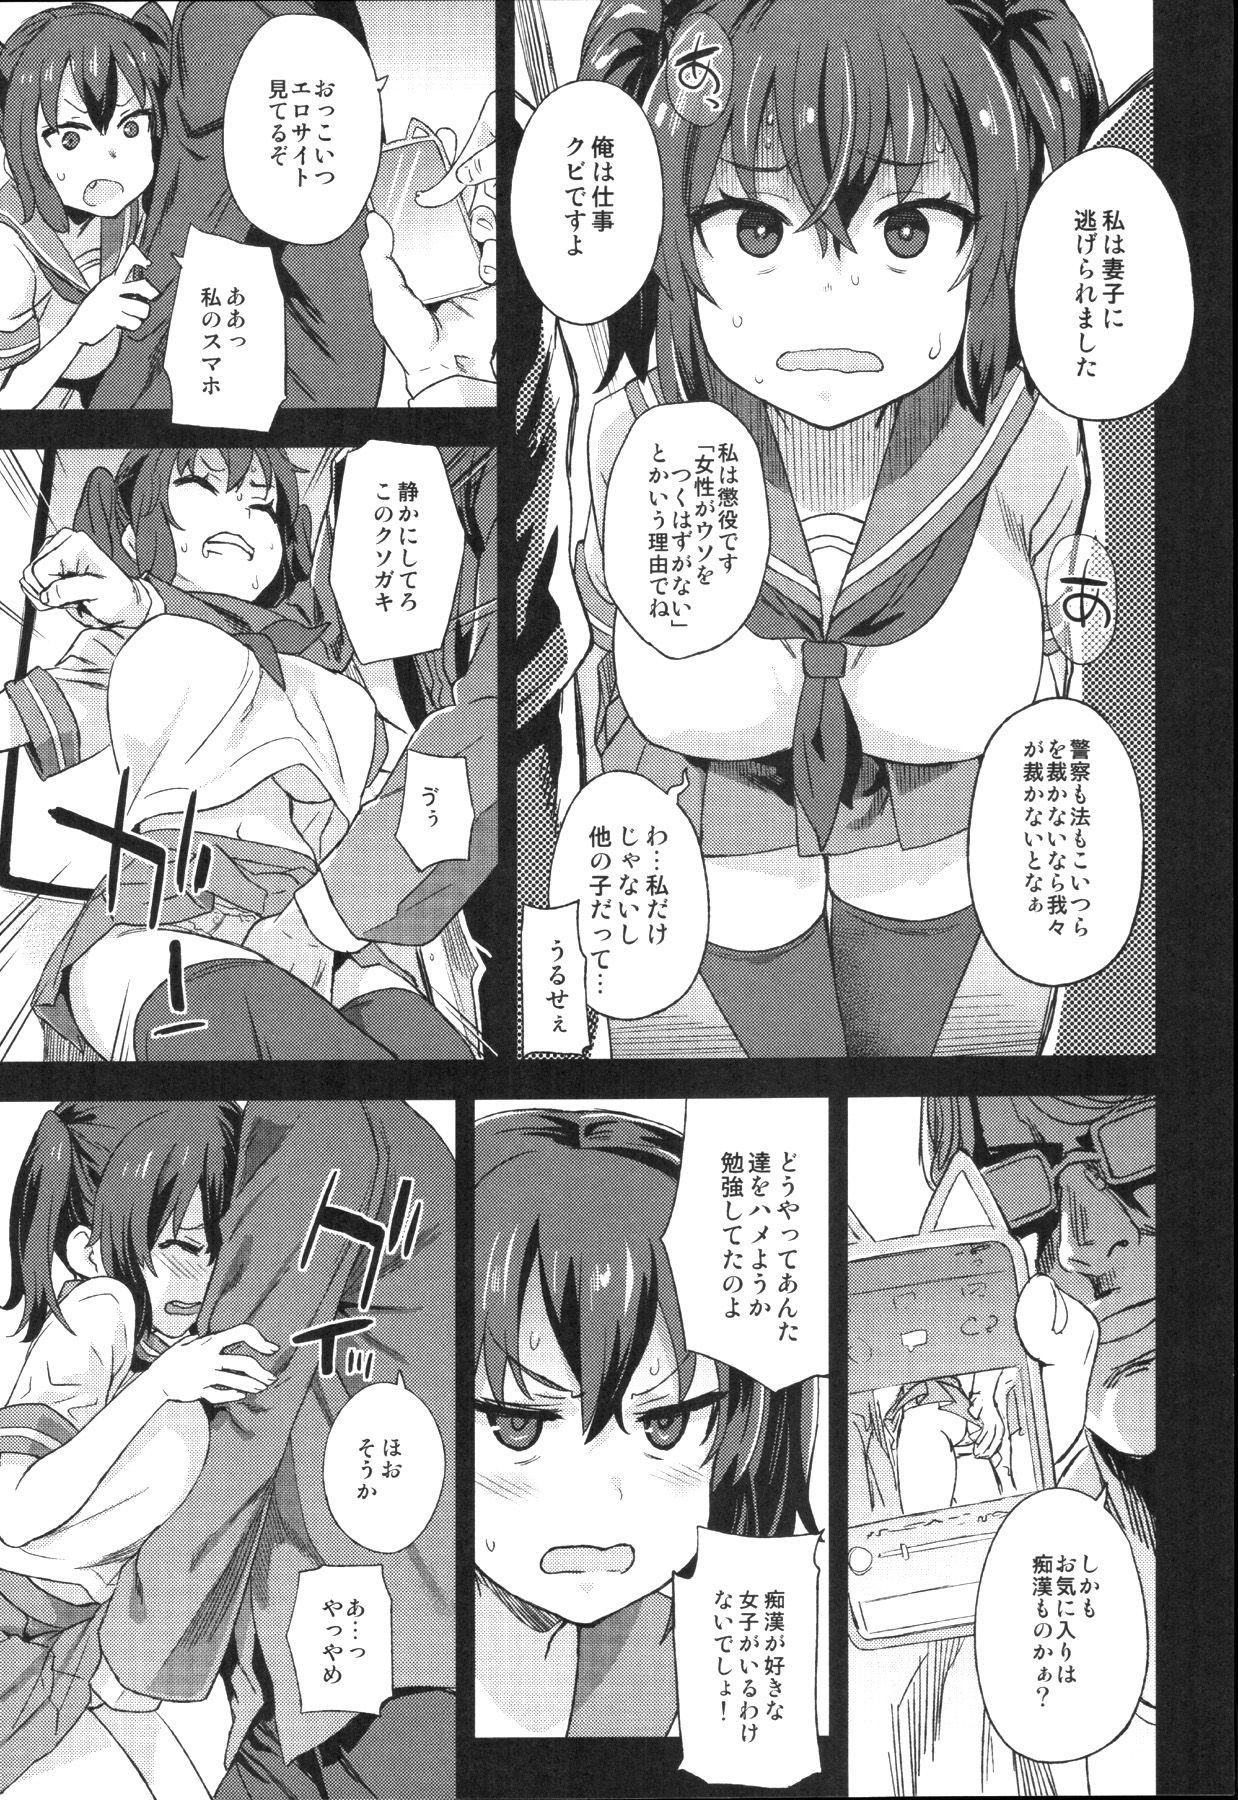 Spy Cam VictimGirls R Chikan Bokumetsu Campaign + Gareki 25 + Gareki: Iro - Fate grand order Skirt - Page 8